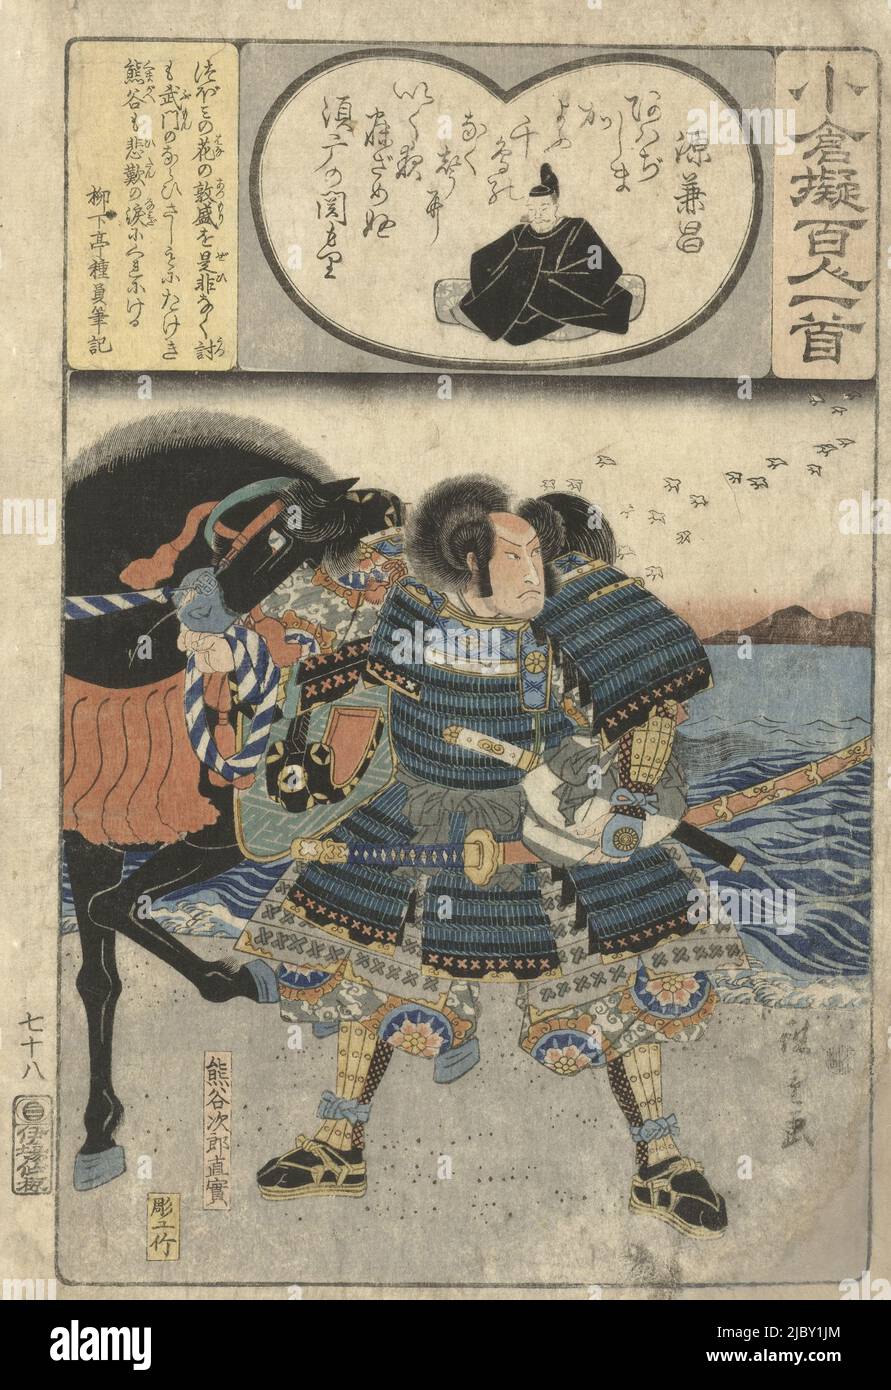 Homme, Kumagae Jiro Naozane, en tenue de combat, debout à côté du cheval, près de la mer. Poème en forme de coeur cartouche avec l'image du poète Minamoto no Kanemasa, en jaune cartouche ci-dessus gauche un commentaire sur la représentation, Kumagae Jiro Naozane par la mer Minamoto no Kanemasa, papier décoratif décrit selon les cent poètes (titre de la série) Ogura nazorae Hyakunin isshu (titre de la série sur l'objet). Imprimeuse: Hiroshige (I), Utagawa, (mentionnée sur l'objet), Minamoto no Kanemasa, (mentionnée sur l'objet), Ryukatei Tanekazu, (mentionné sur l'objet), Japon, 1846, papier, coupe de bois de couleur, h 360 mm Banque D'Images